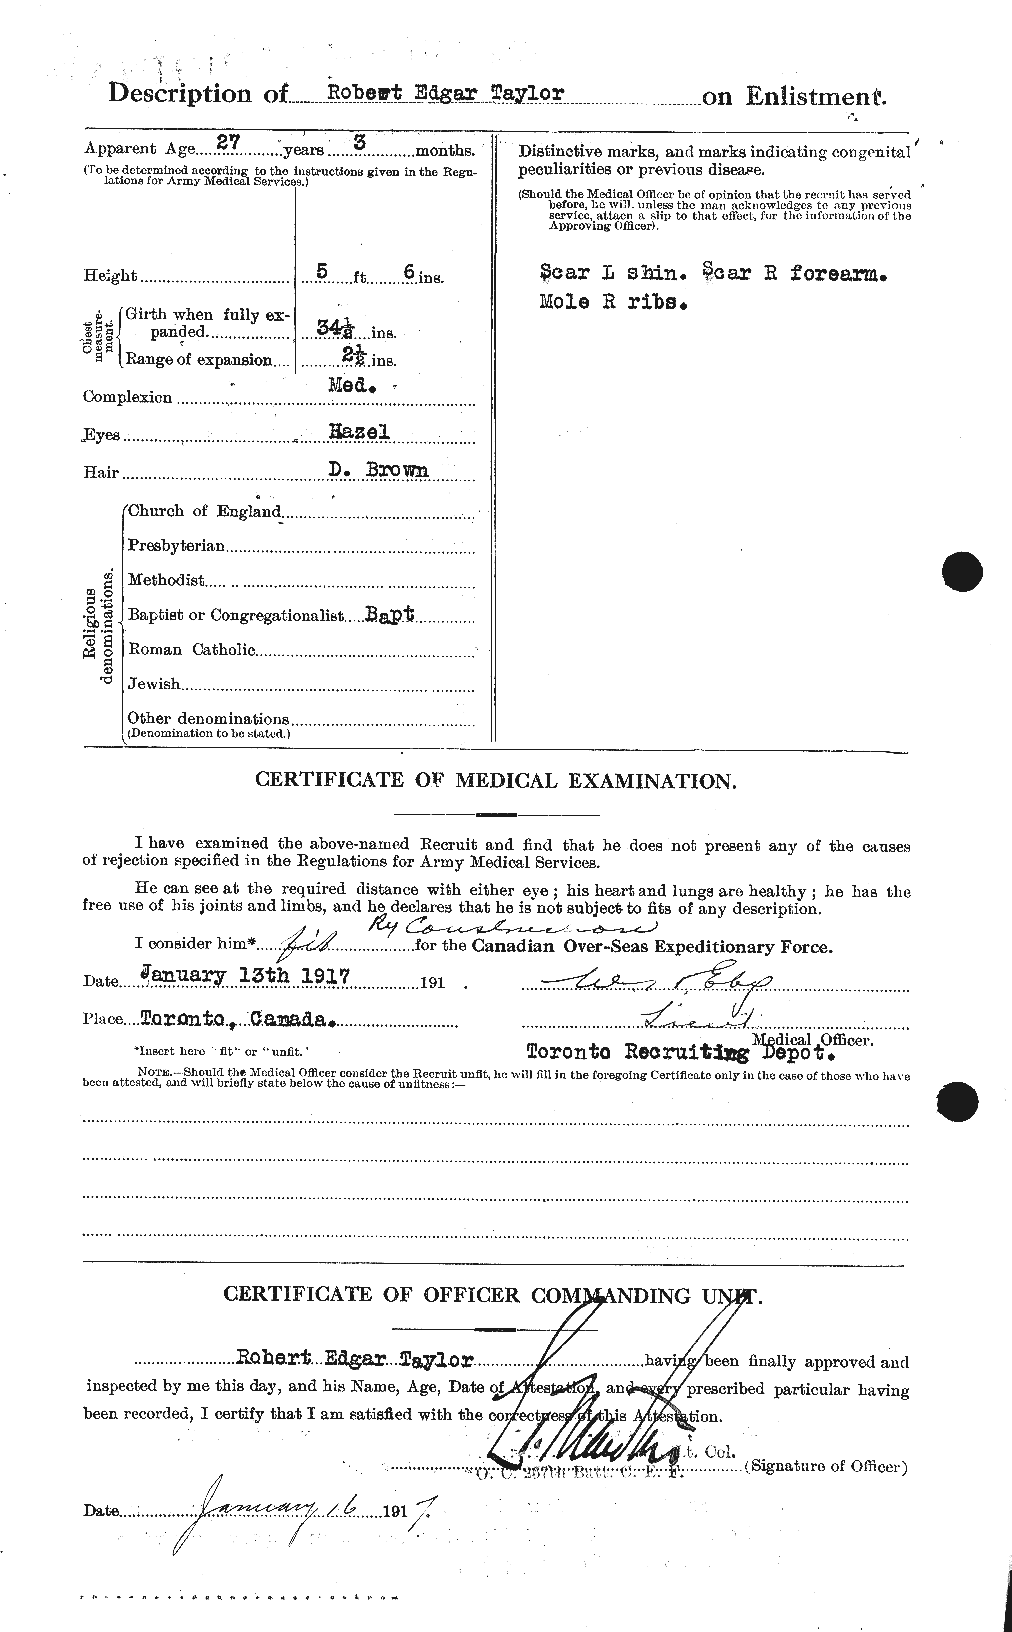 Dossiers du Personnel de la Première Guerre mondiale - CEC 627473b